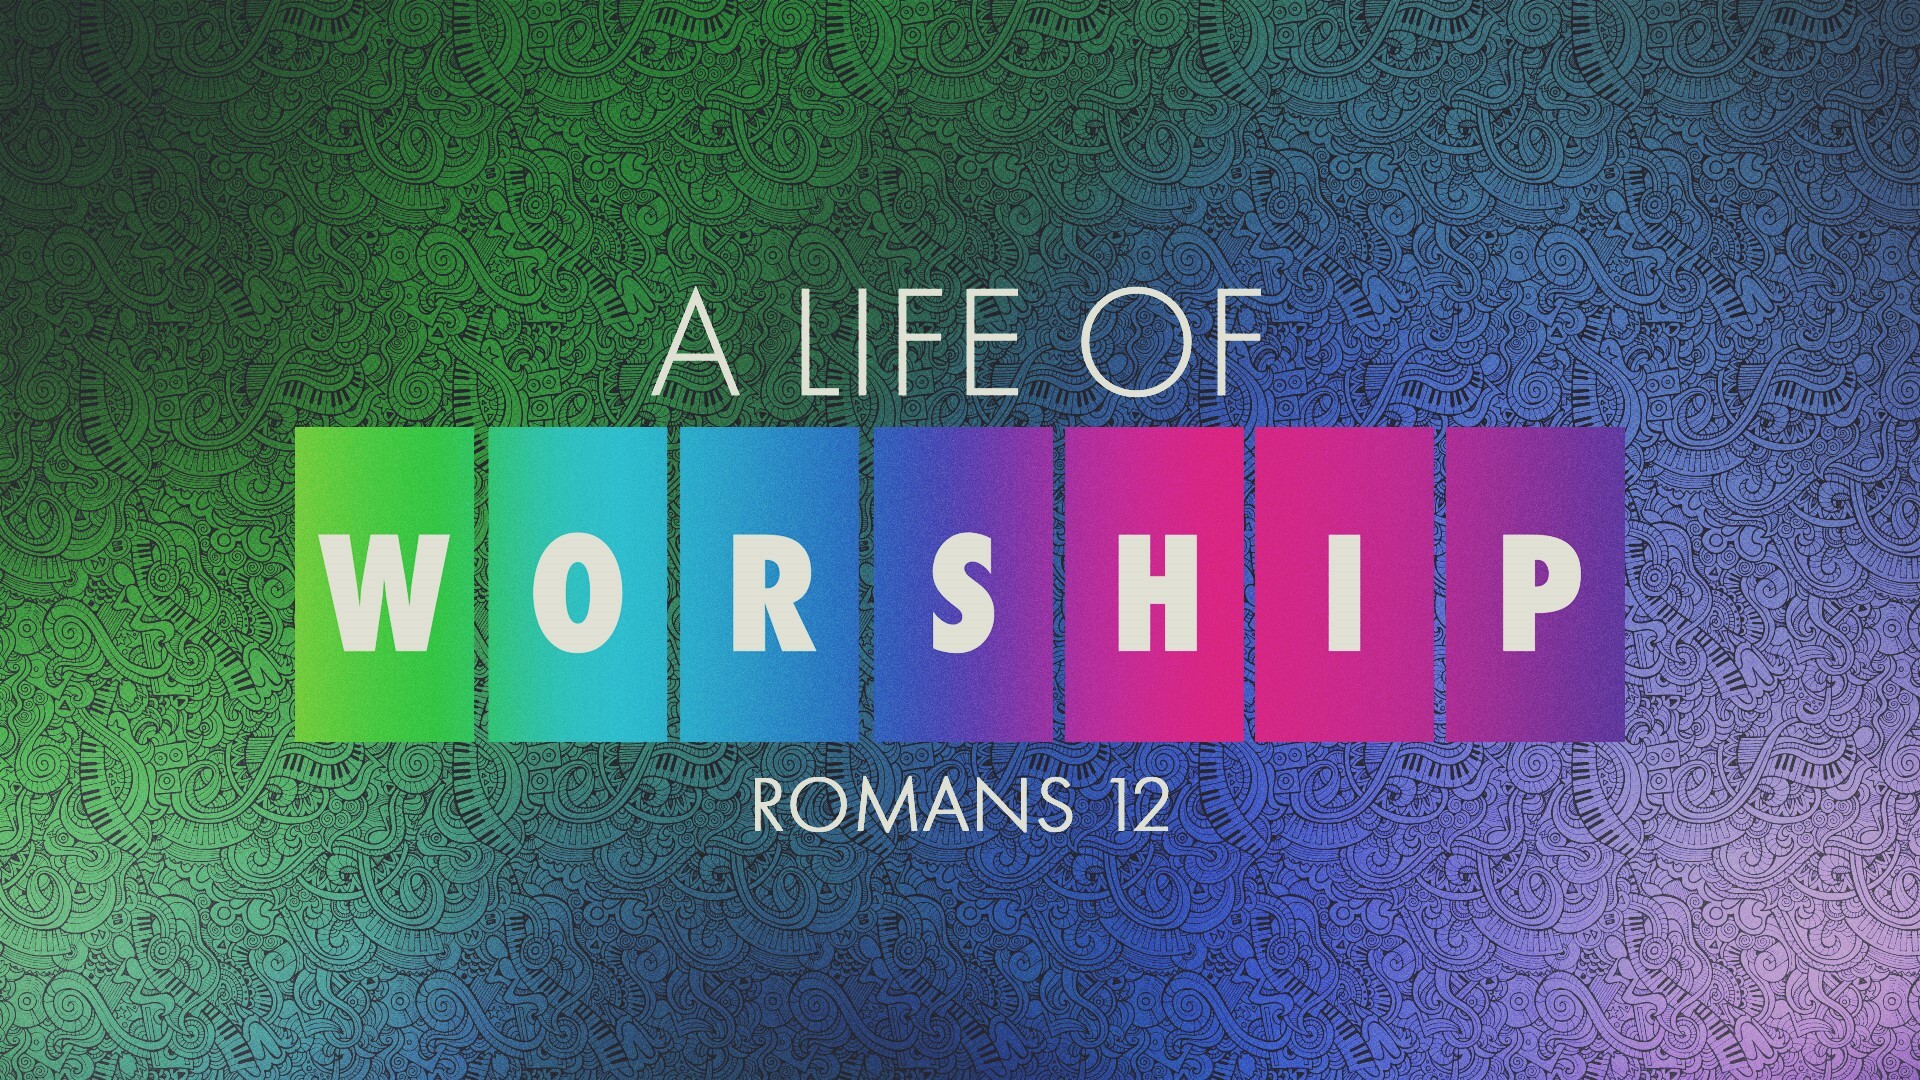 Worship_Title.jpg